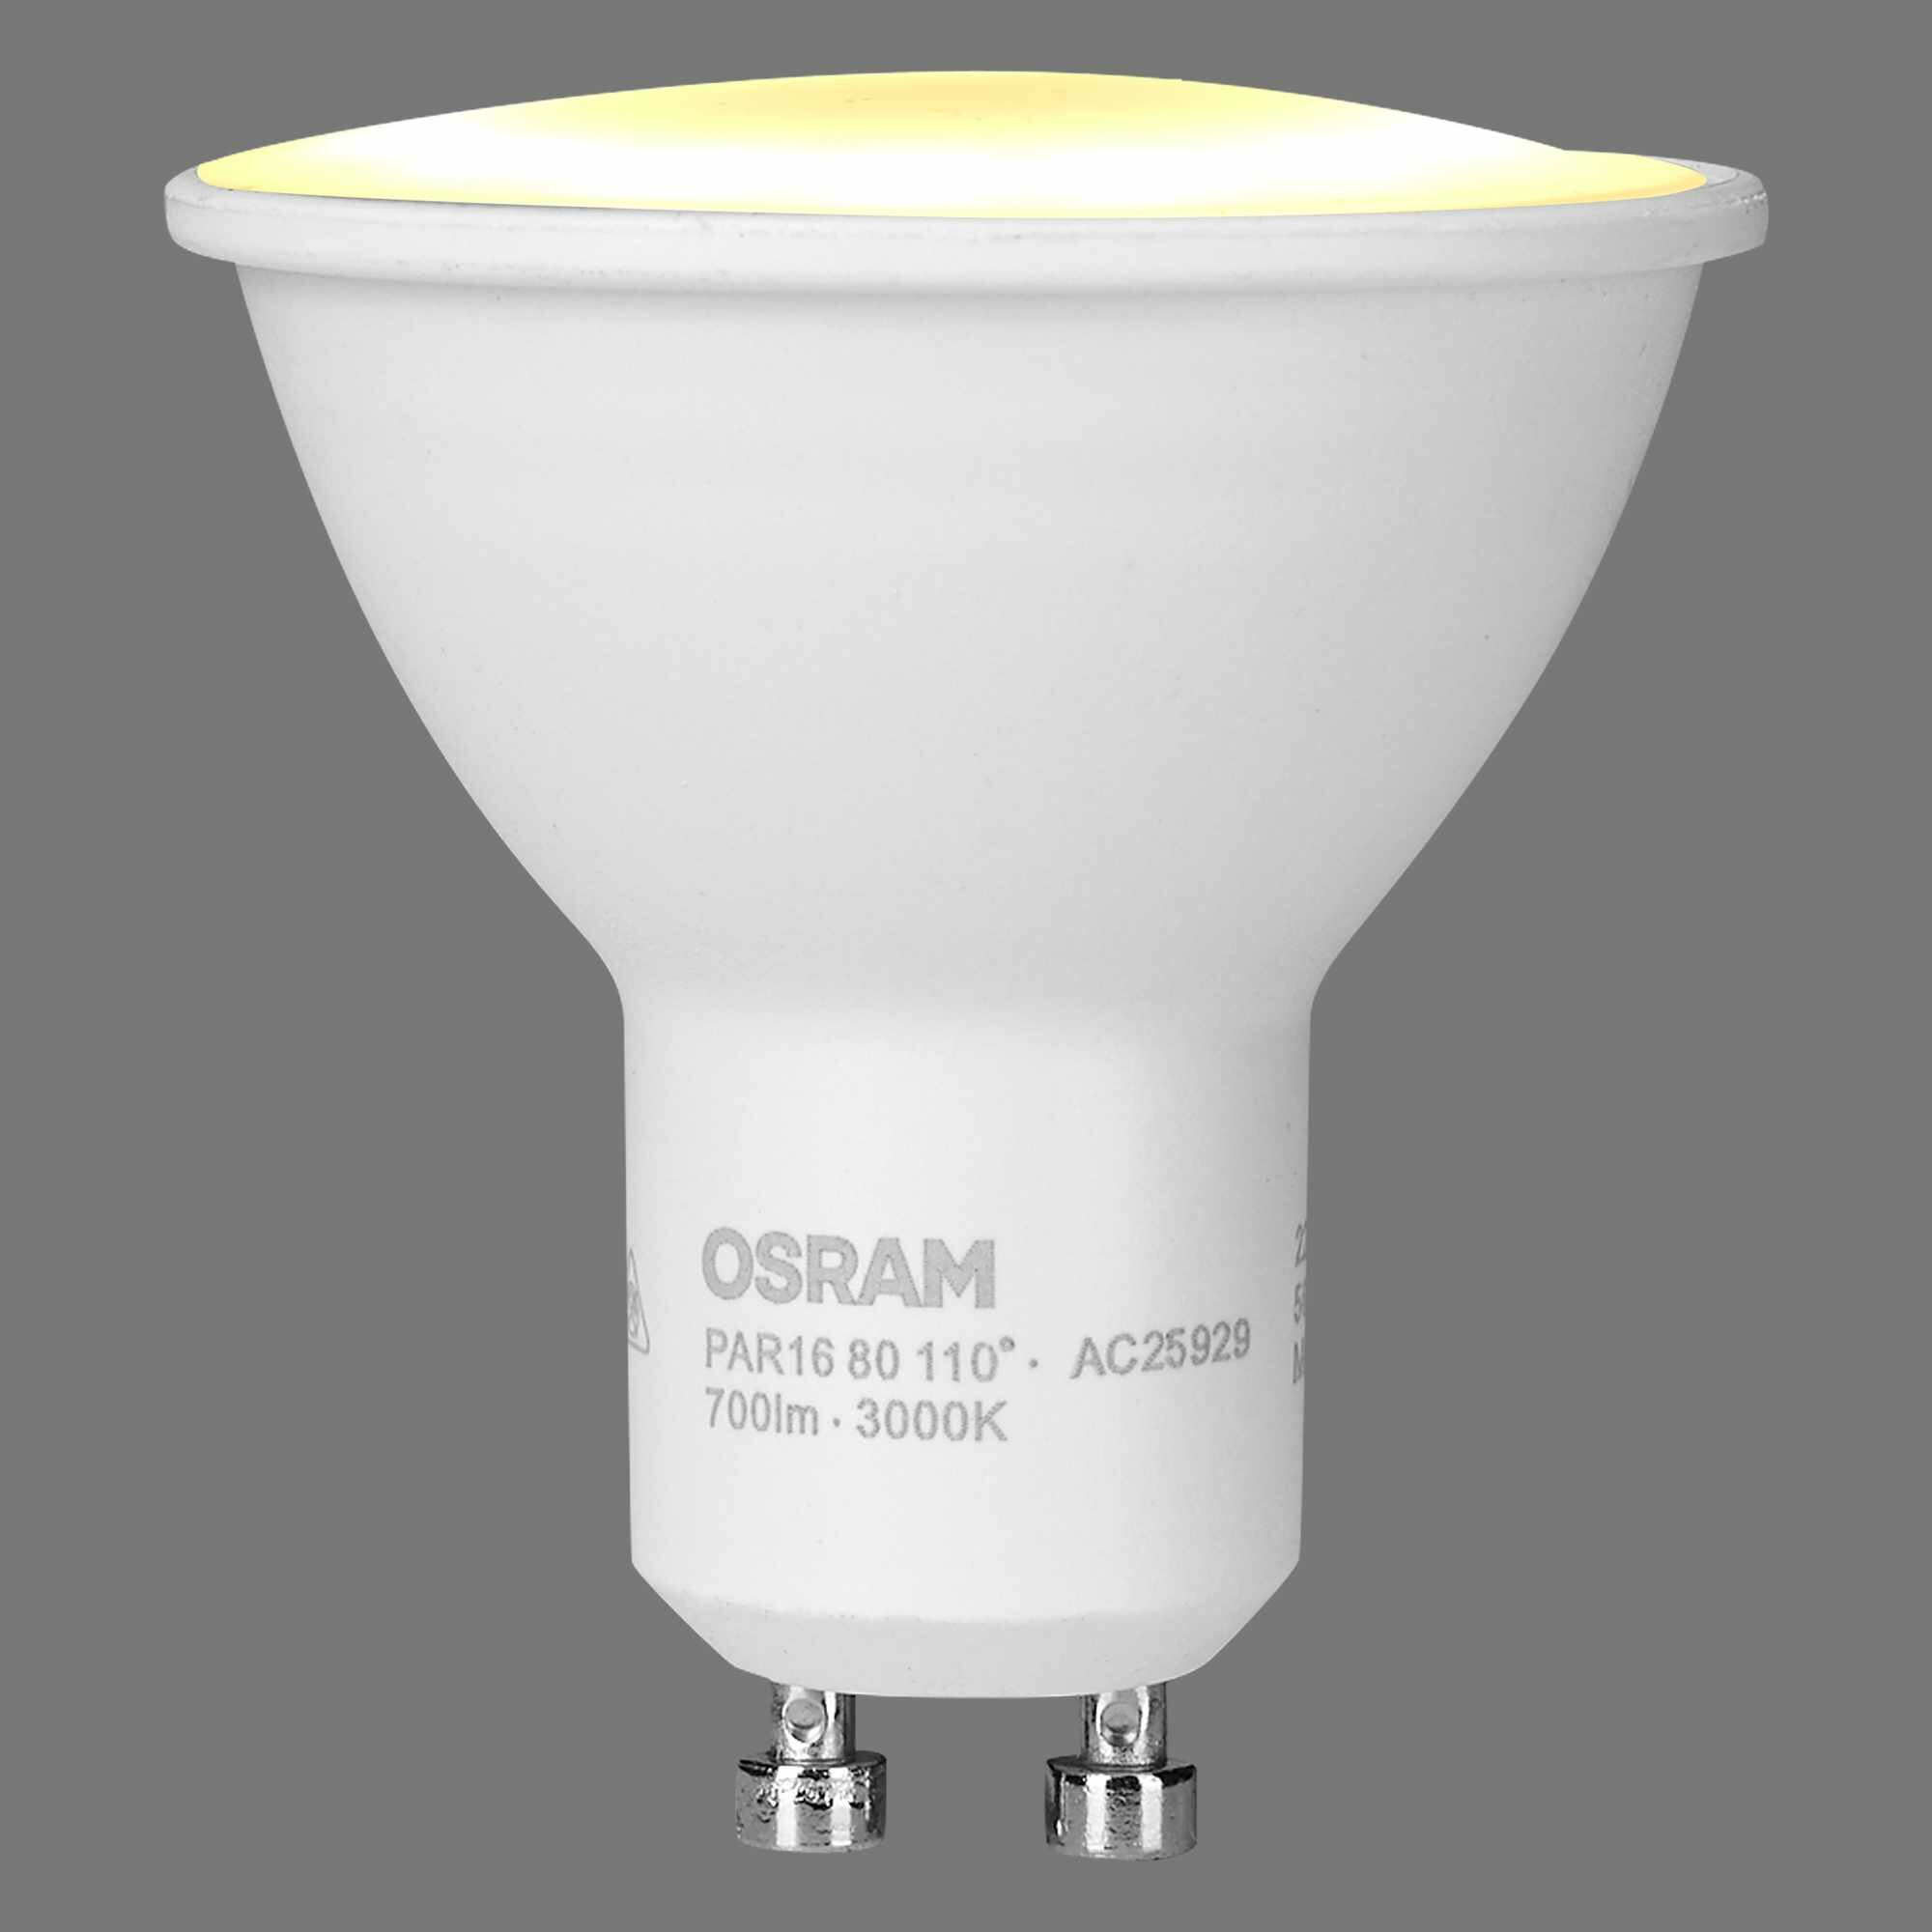 Лампа светодиодная Osram GU10 220-240 В 7 Вт спот матовая 700 лм тёплый белый свет - фото №15